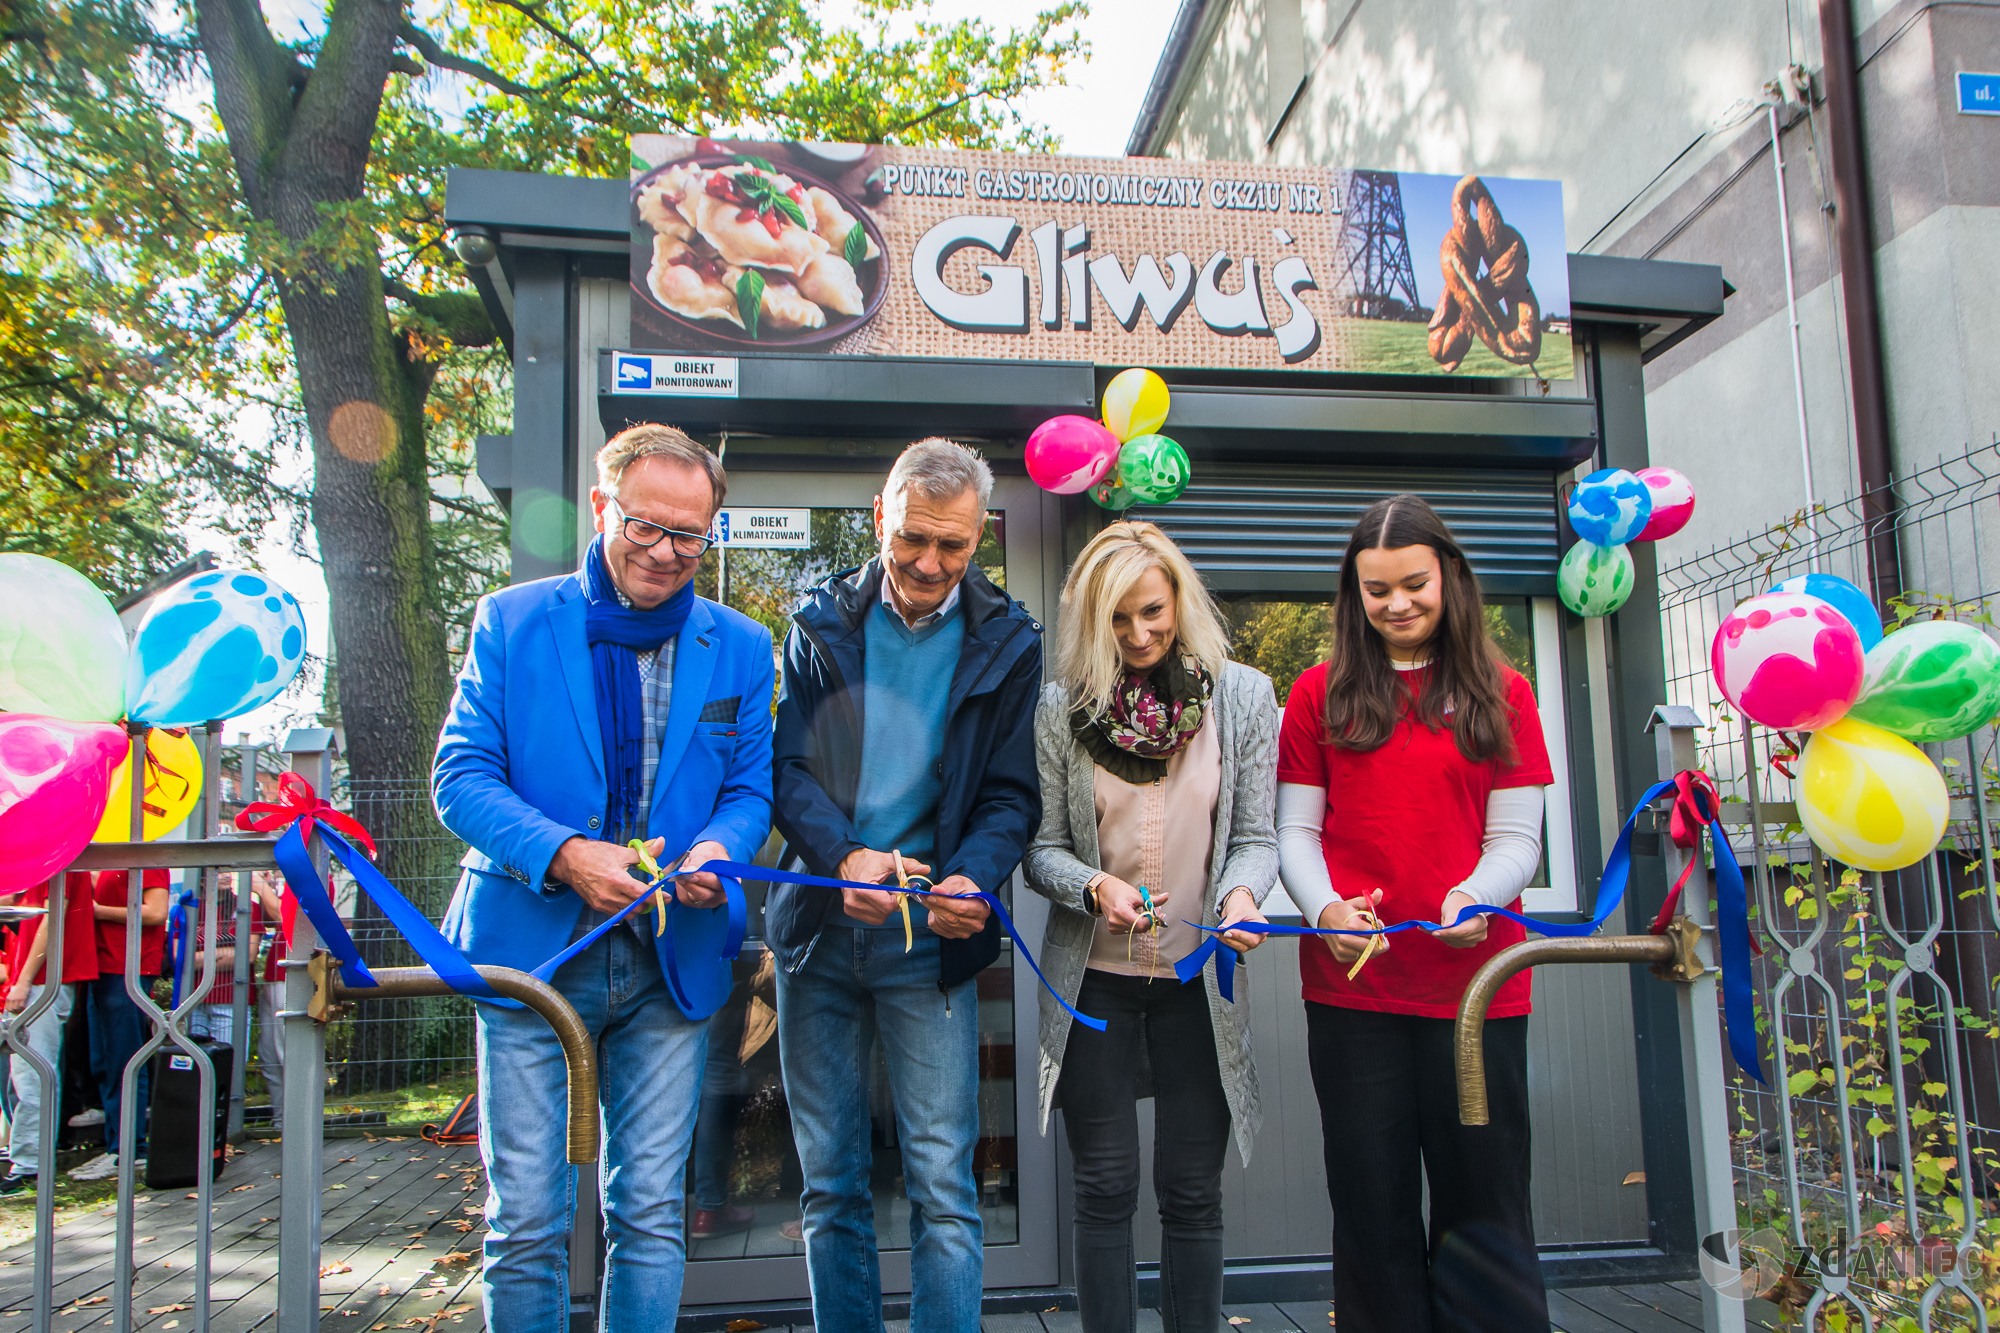 Otwarcie szkolnego sklepu gastronomicznego CKZiU - Gliwuś